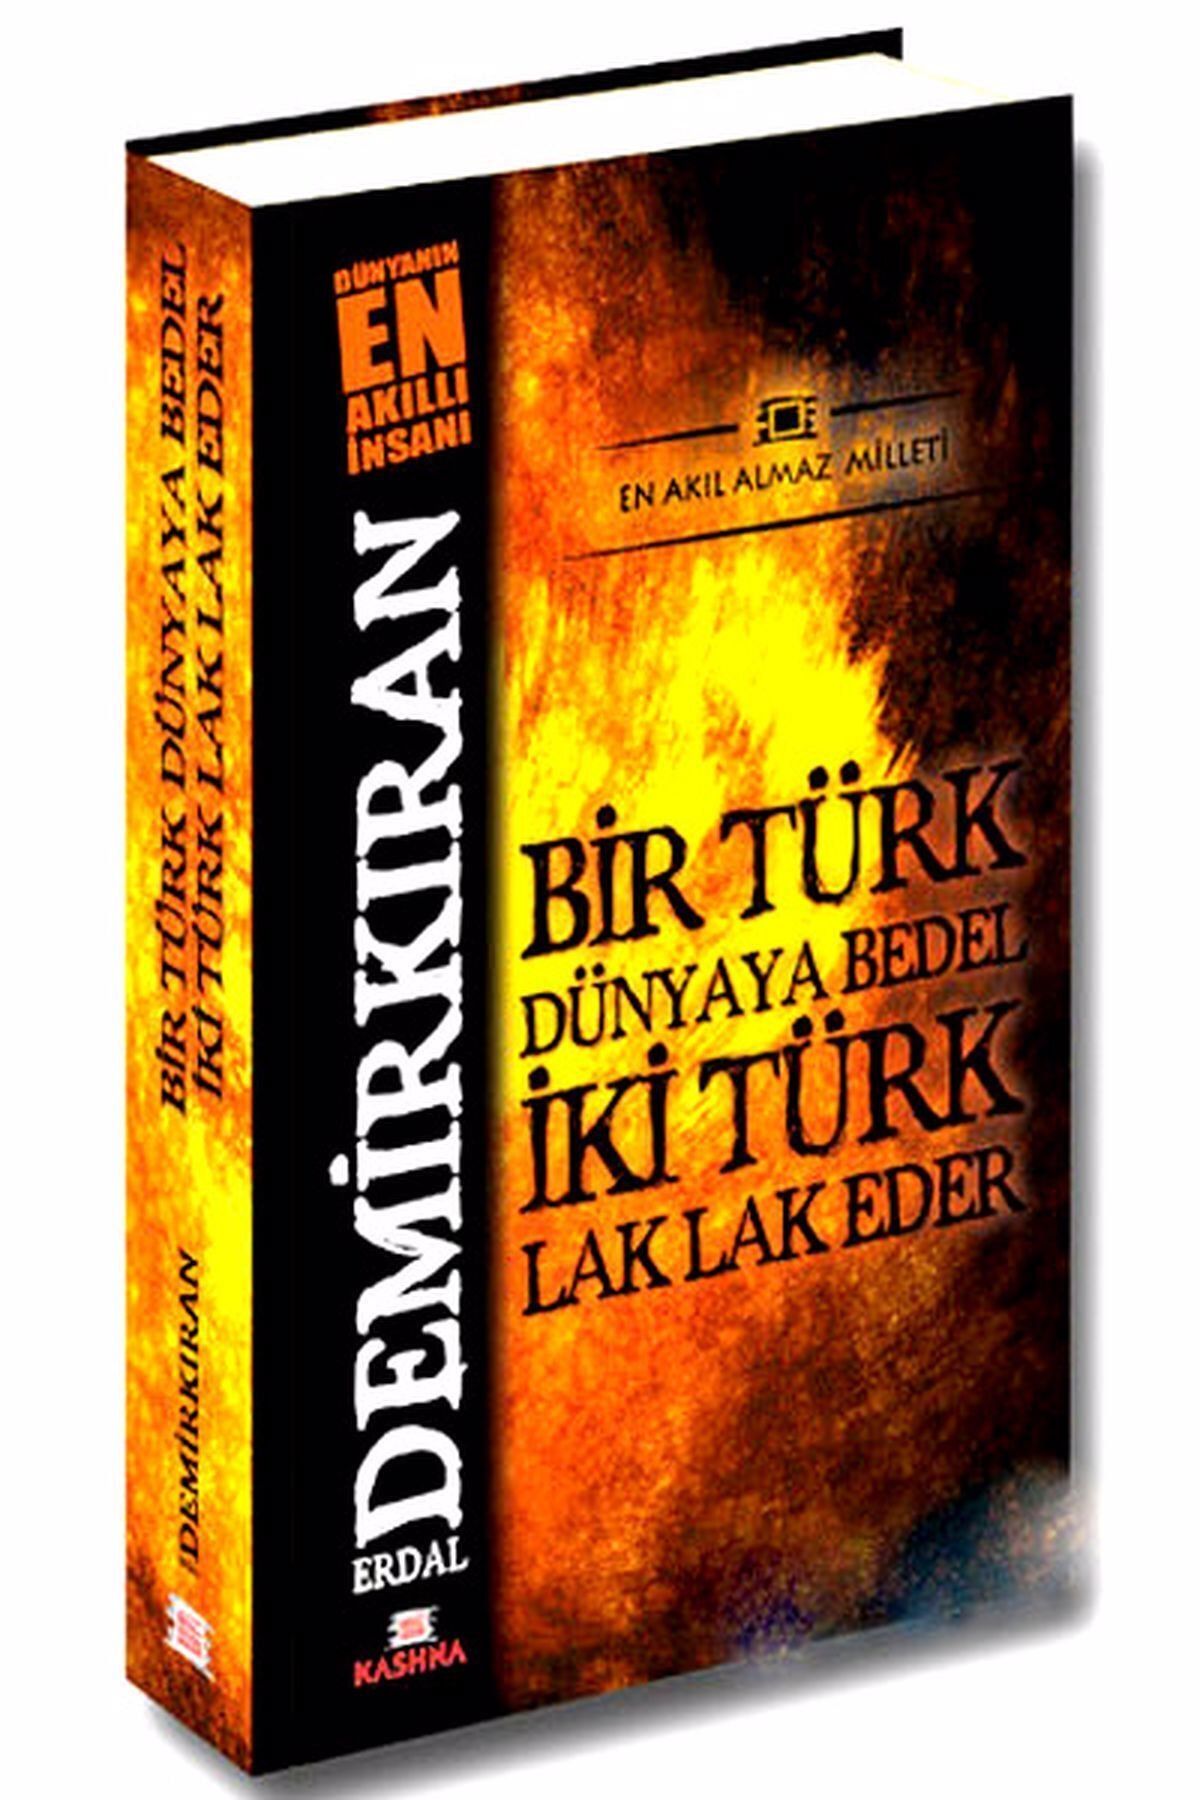 Kashna Kitap Ağacı Bir Türk Dünyaya Bedel İki Türk Lak Lak Eder - Erdal Demirkıran